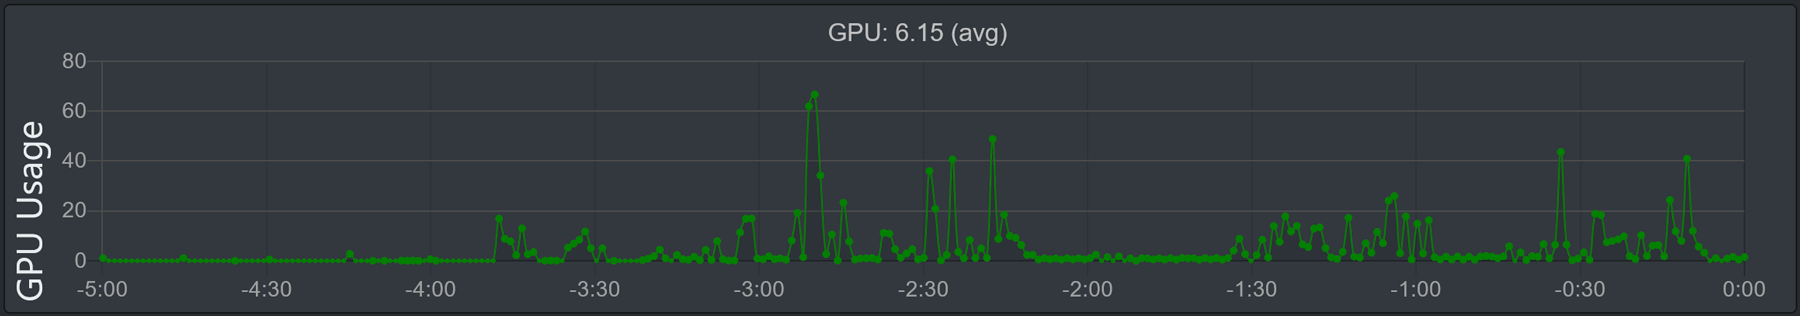 تصویر نمودار "استفاده از GPU".